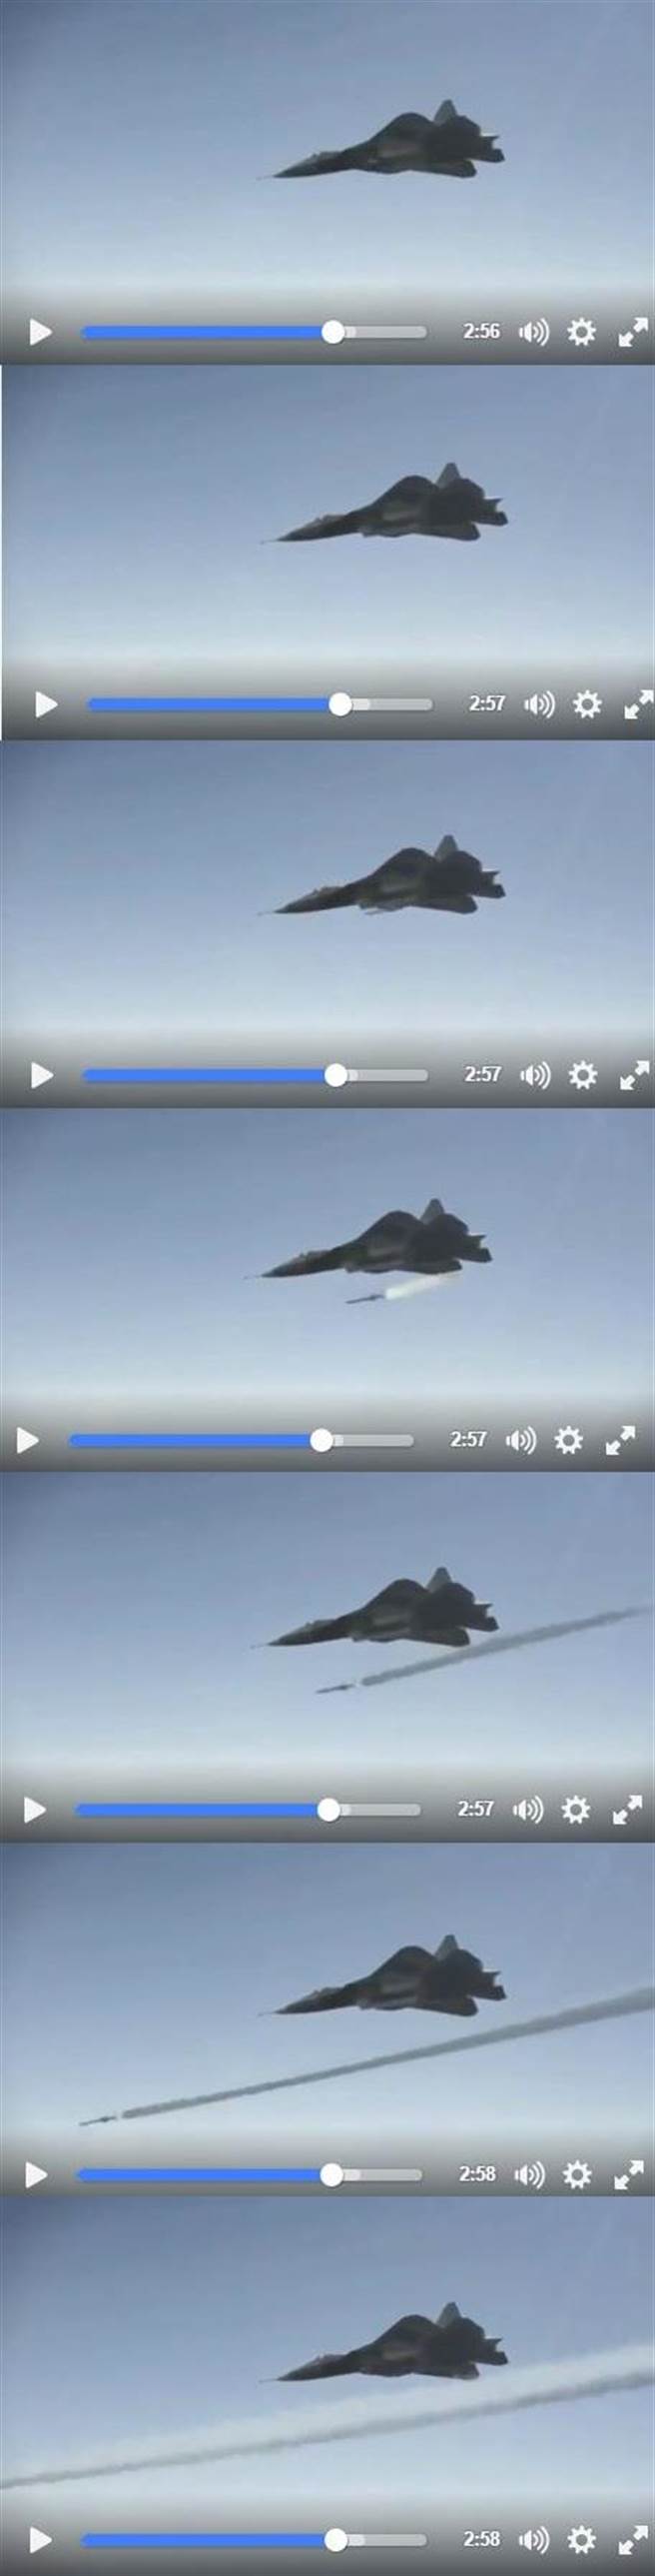 今日俄羅斯影片中T-50發射飛彈的連續動作。(圖/SU-50臉書截圖)